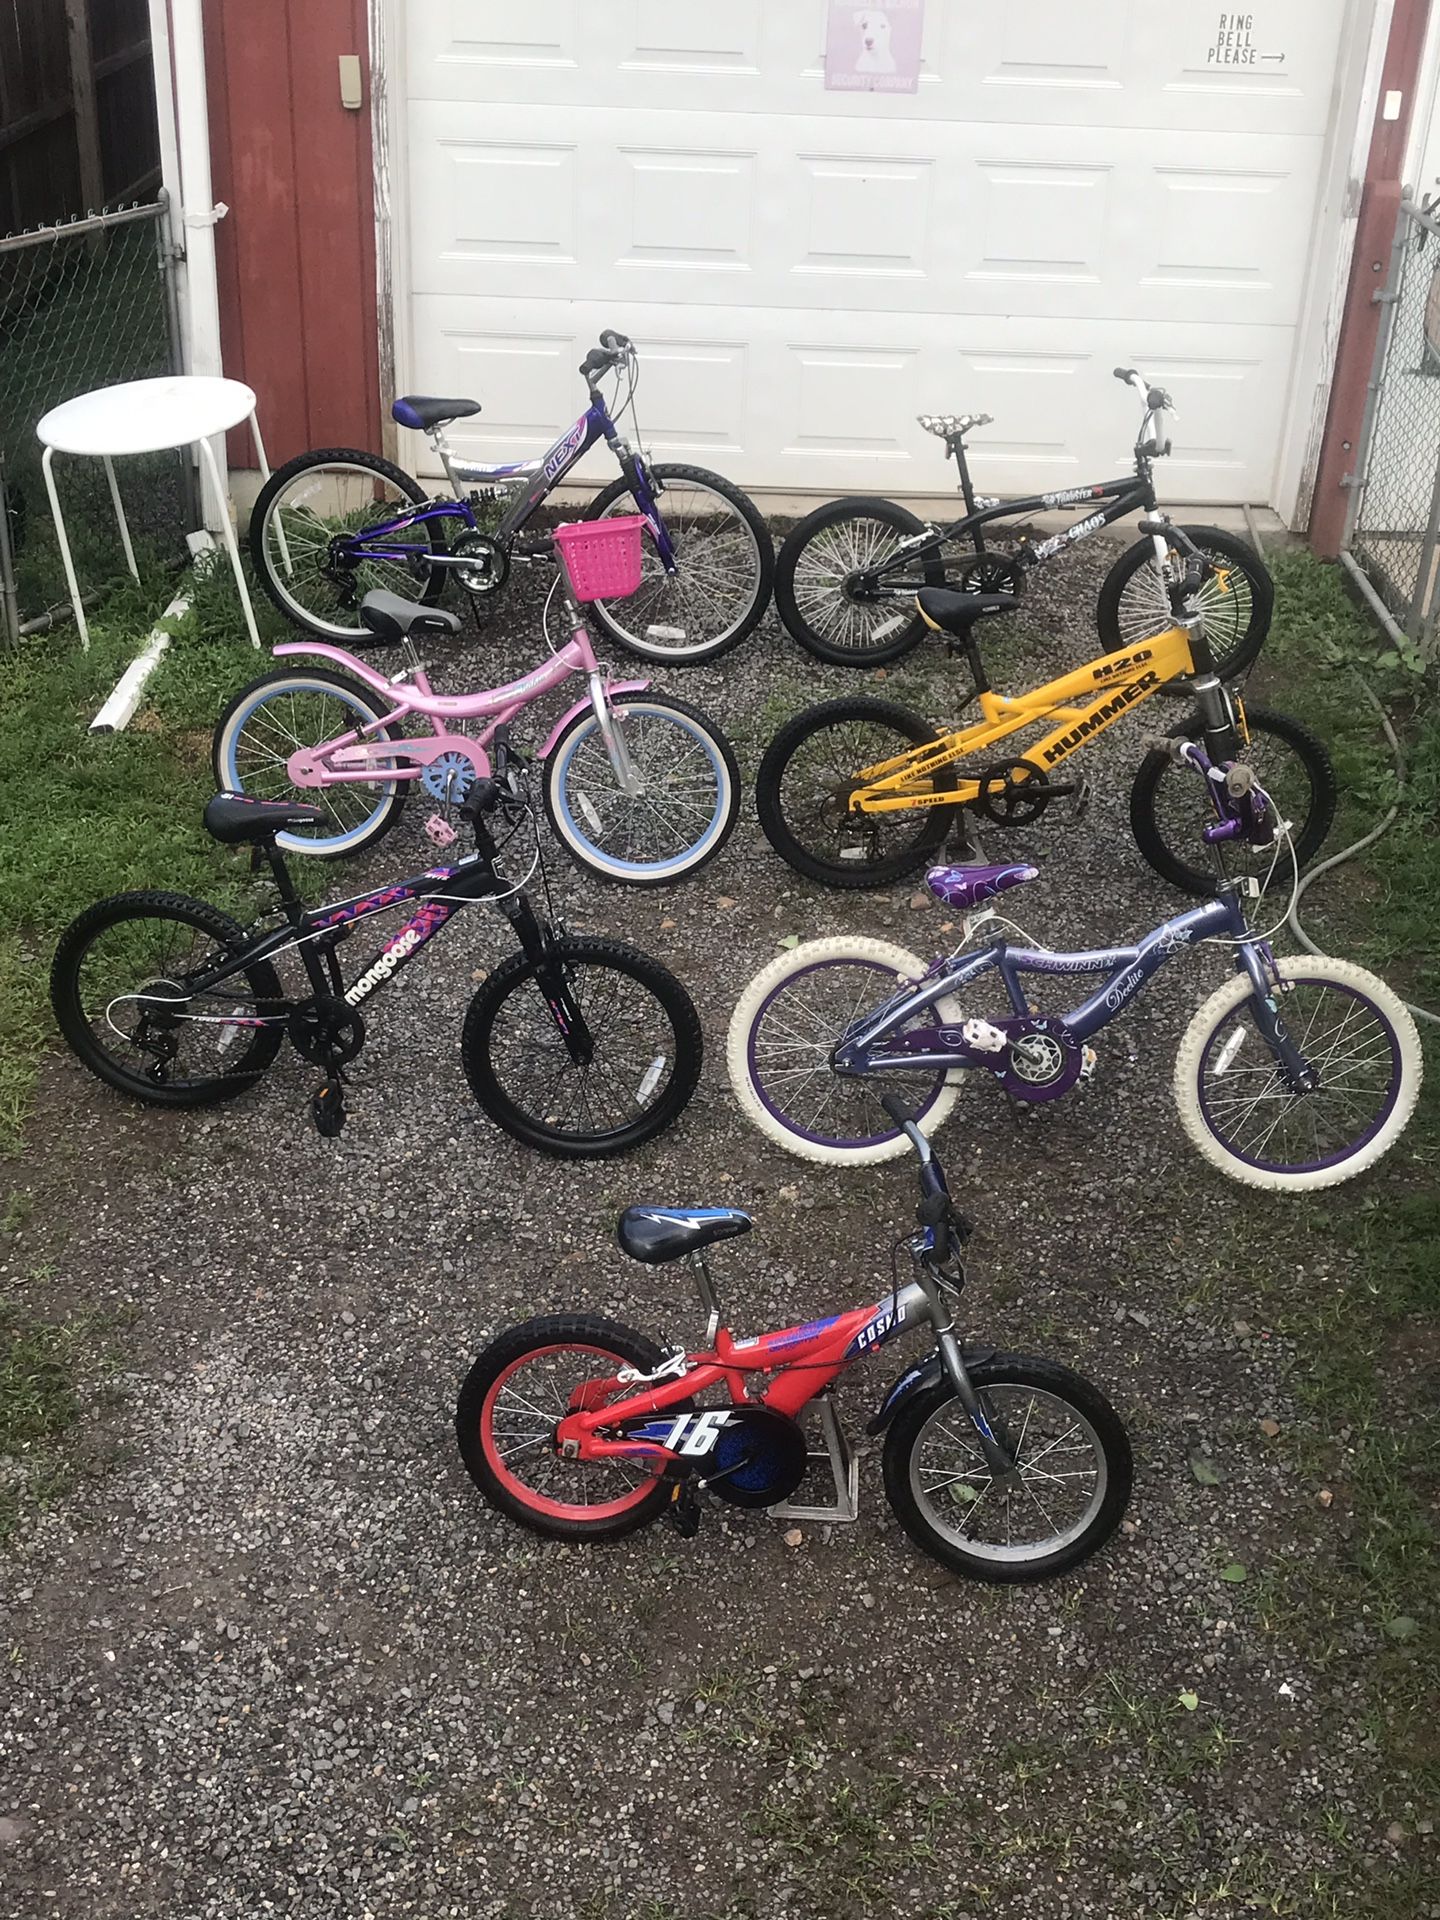 Kids bikes